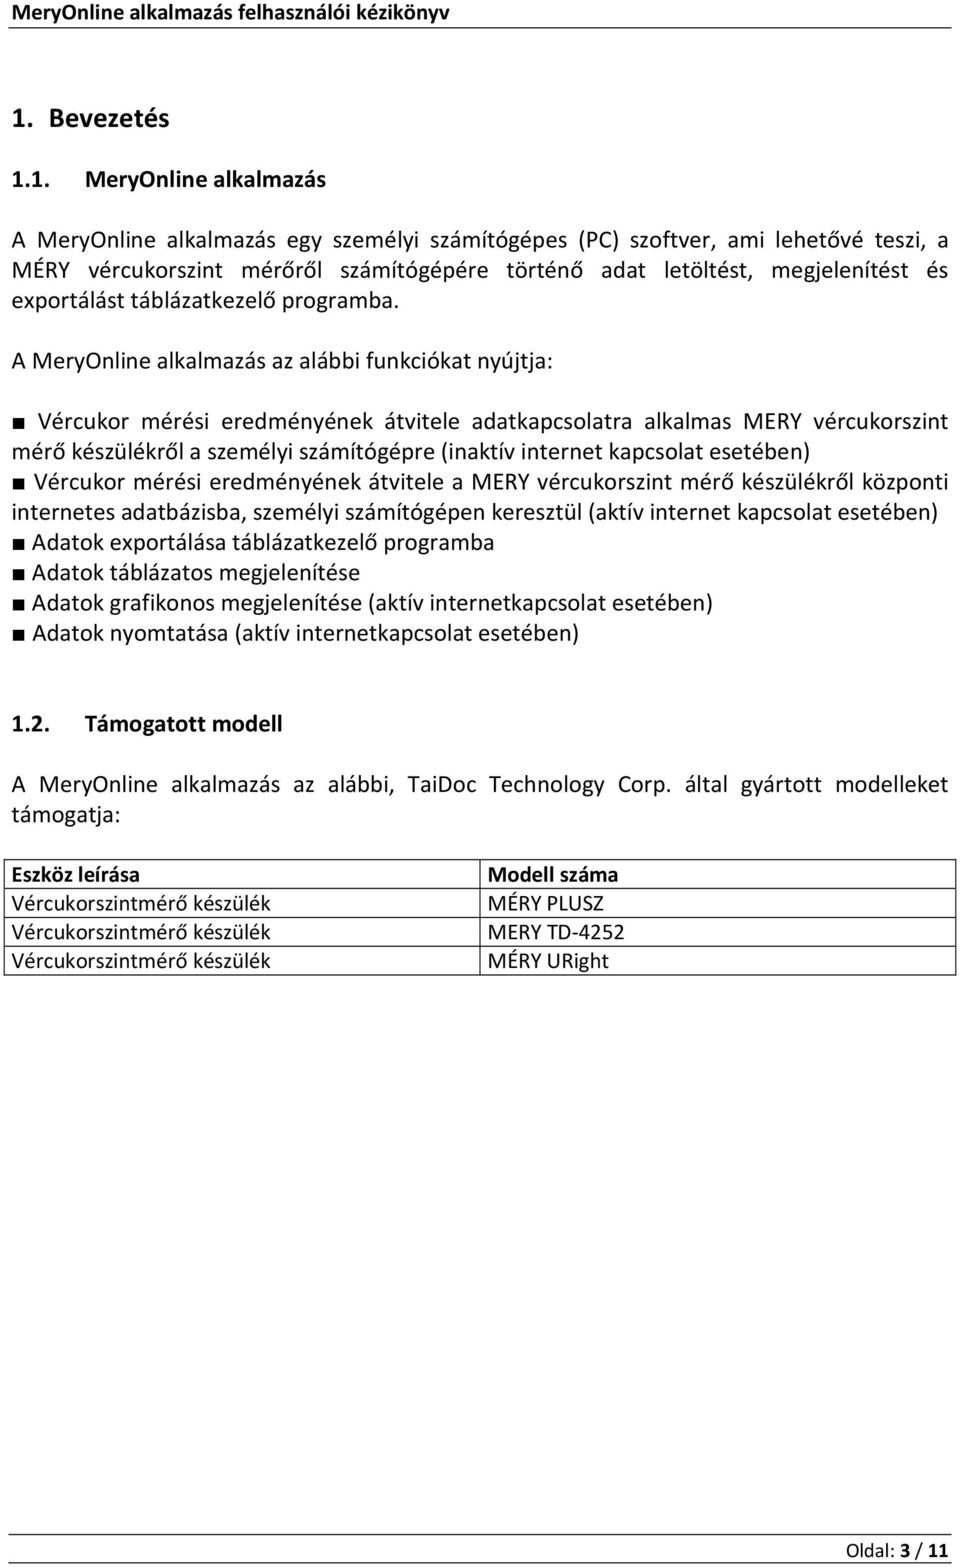 A MeryOnline alkalmazás az alábbi funkciókat nyújtja: Vércukor mérési eredményének átvitele adatkapcsolatra alkalmas MERY vércukorszint mérő készülékről a személyi számítógépre (inaktív internet